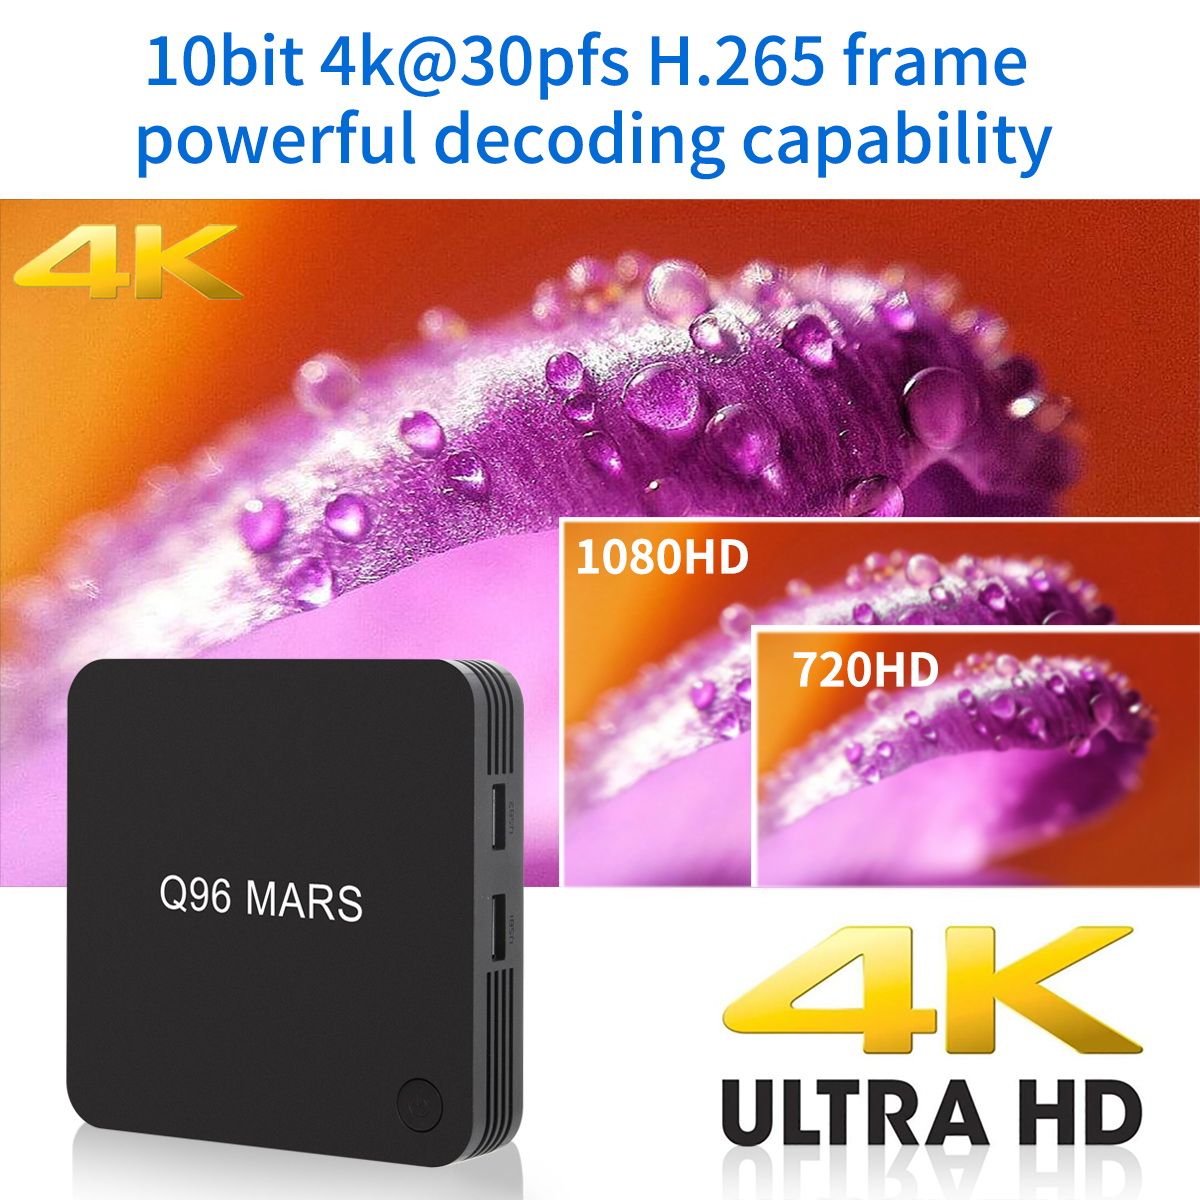 Q96-MARS-Amlogic-S905L-1GB-RAM-8GB-ROM-Android-71-HD-H265-TV-Box-1466236